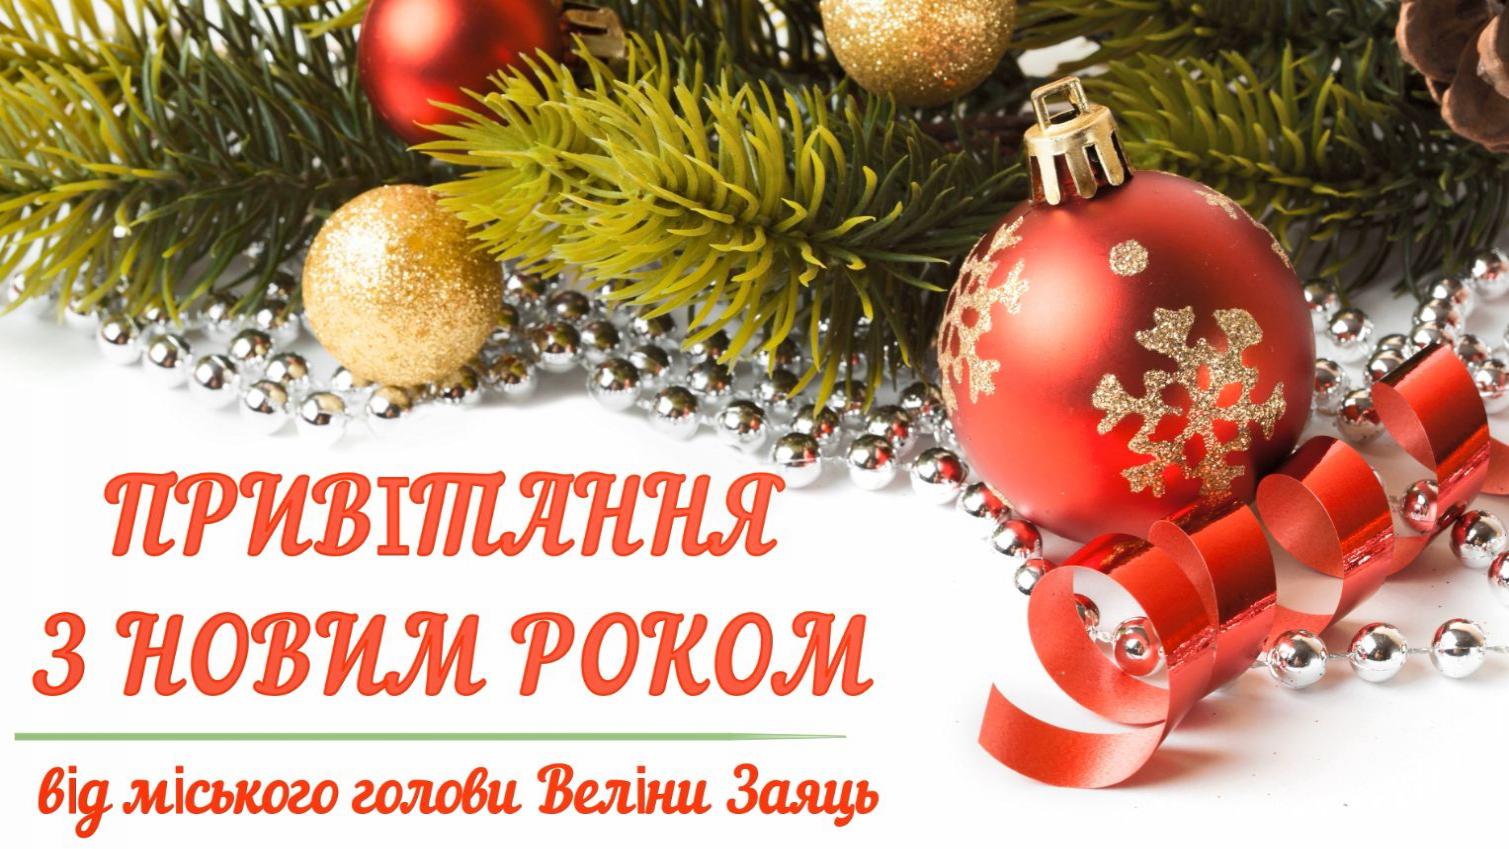 http://dunrada.gov.ua/uploadfile/archive_news/2020/12/31/2020-12-31_9742/images/images-16545.jpg